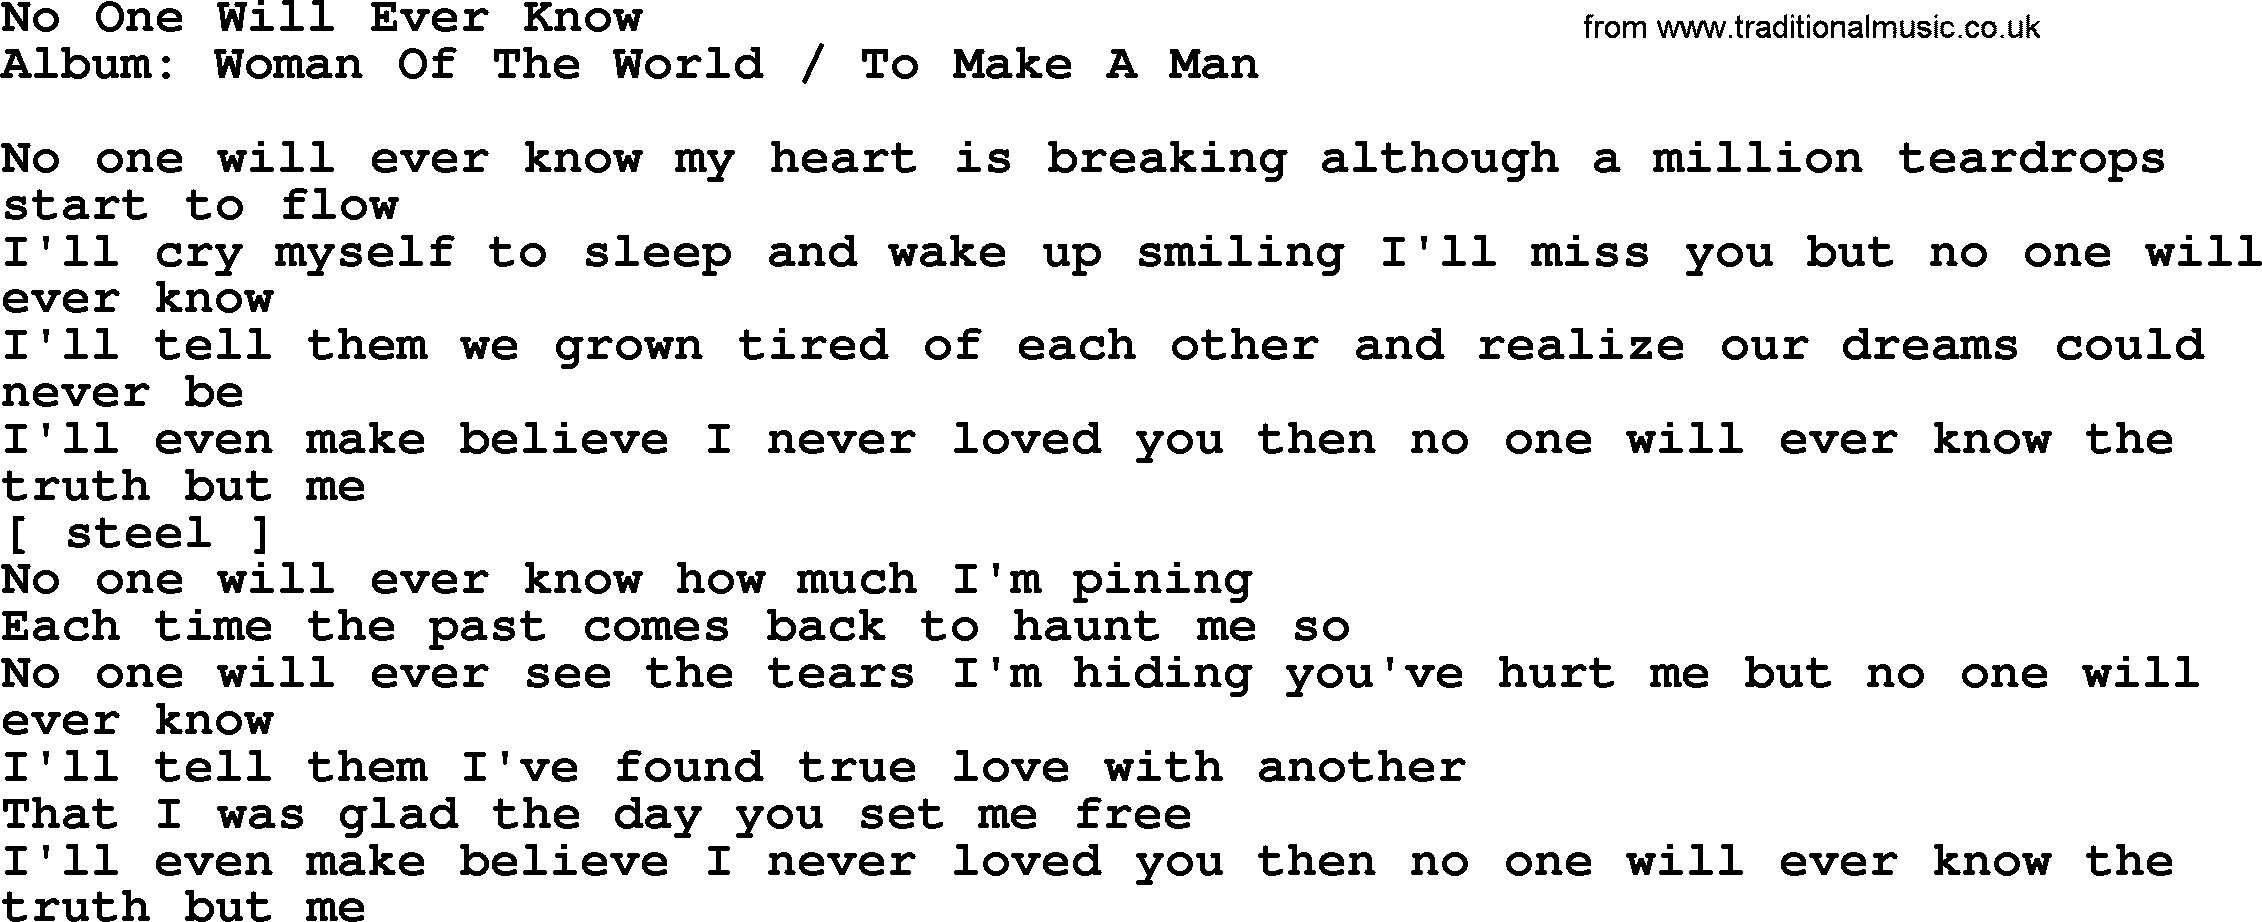 Loretta Lynn song: No One Will Ever Know lyrics